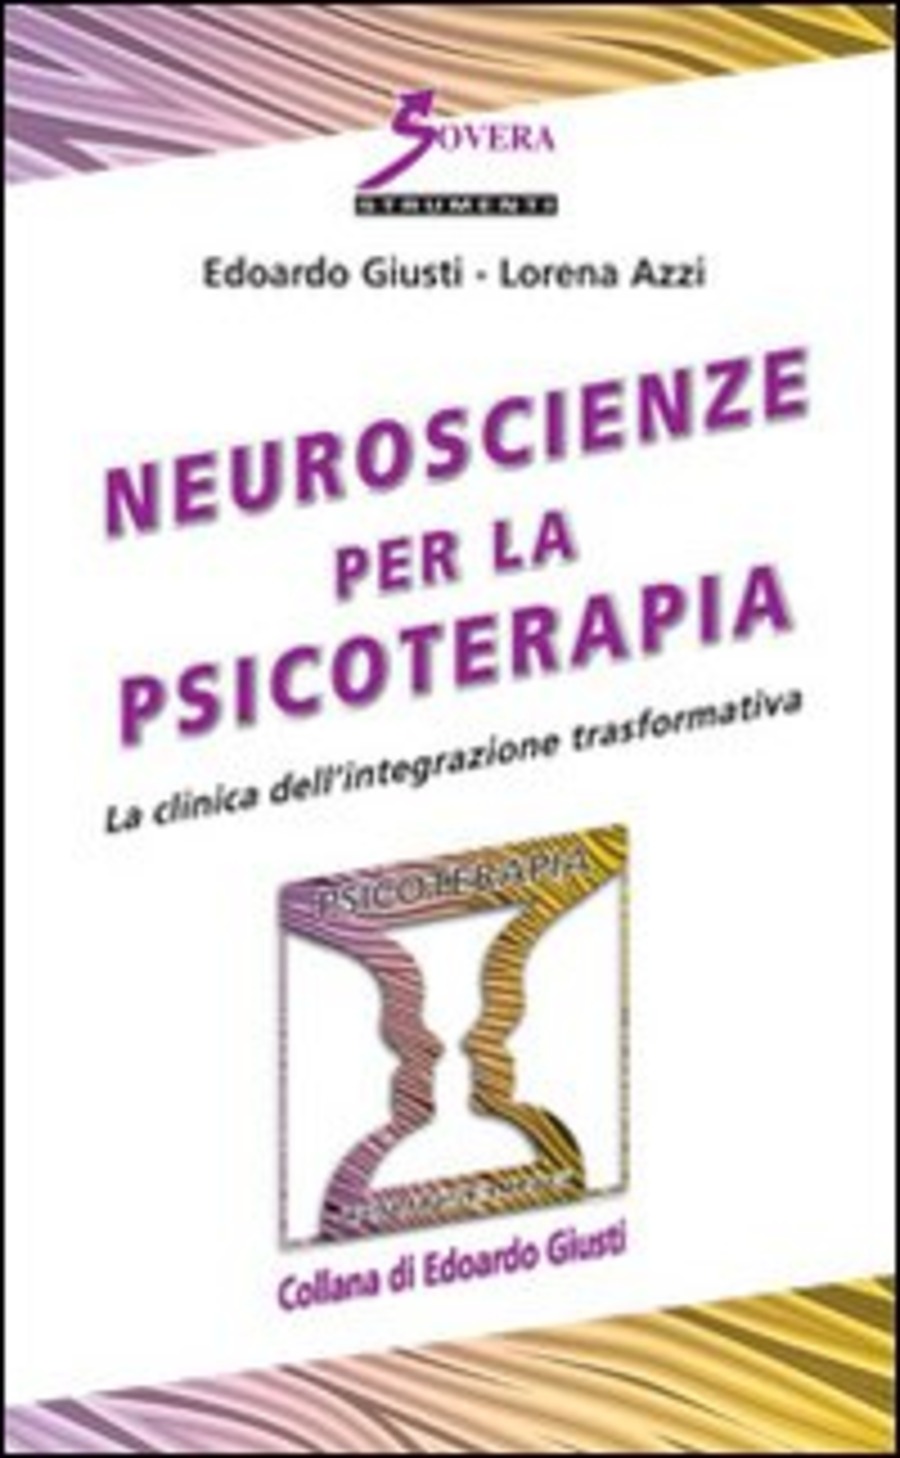 Neuroscienze per la psicoterapia. La clinica dell'integrazione trasformativa